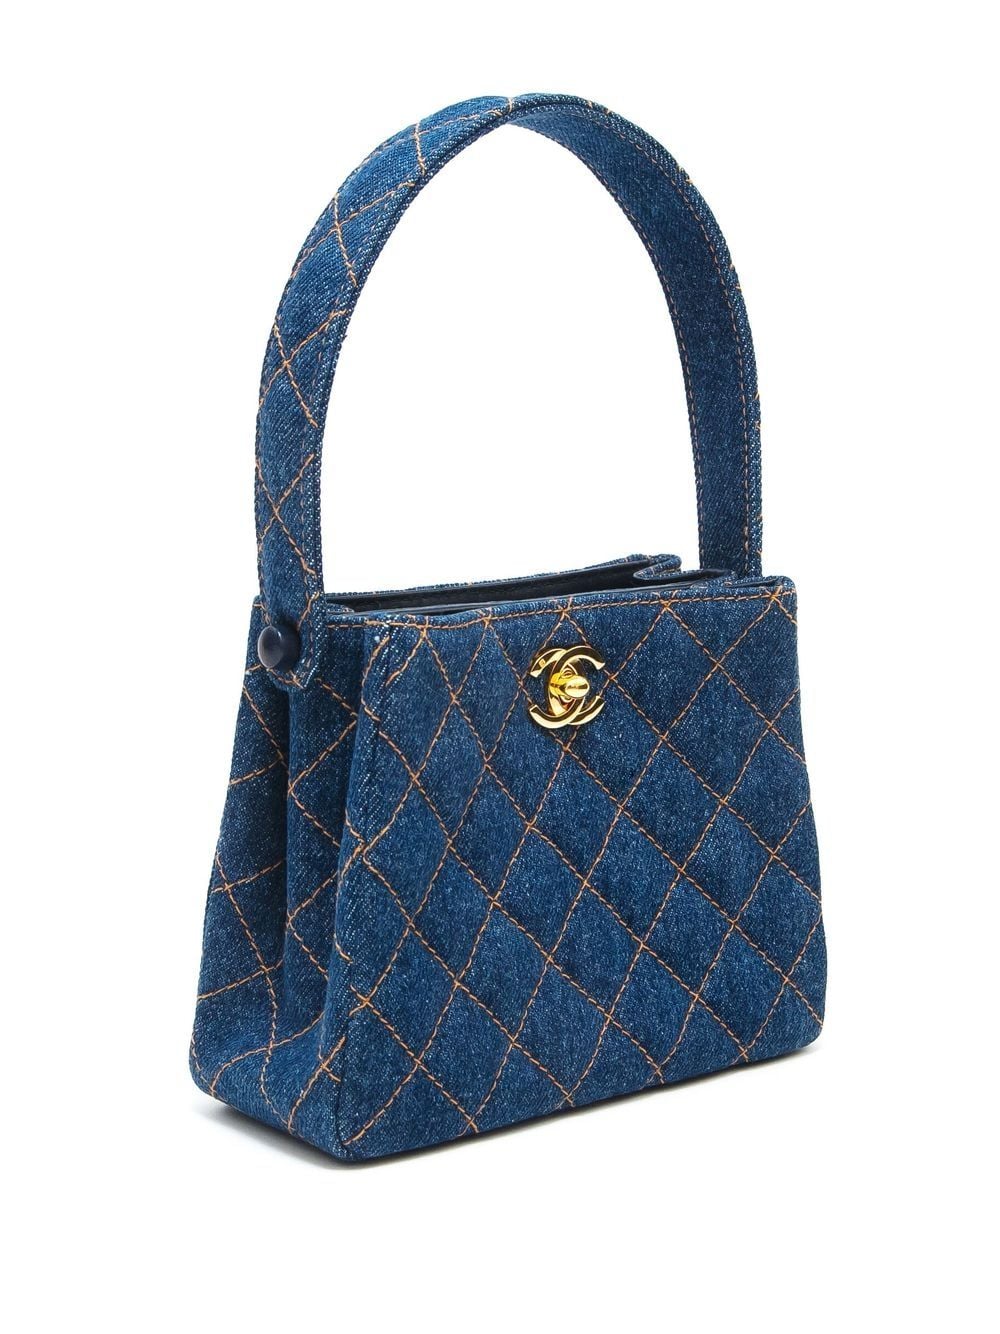 Chanel Vintage Denim Flap Backpack - Blue